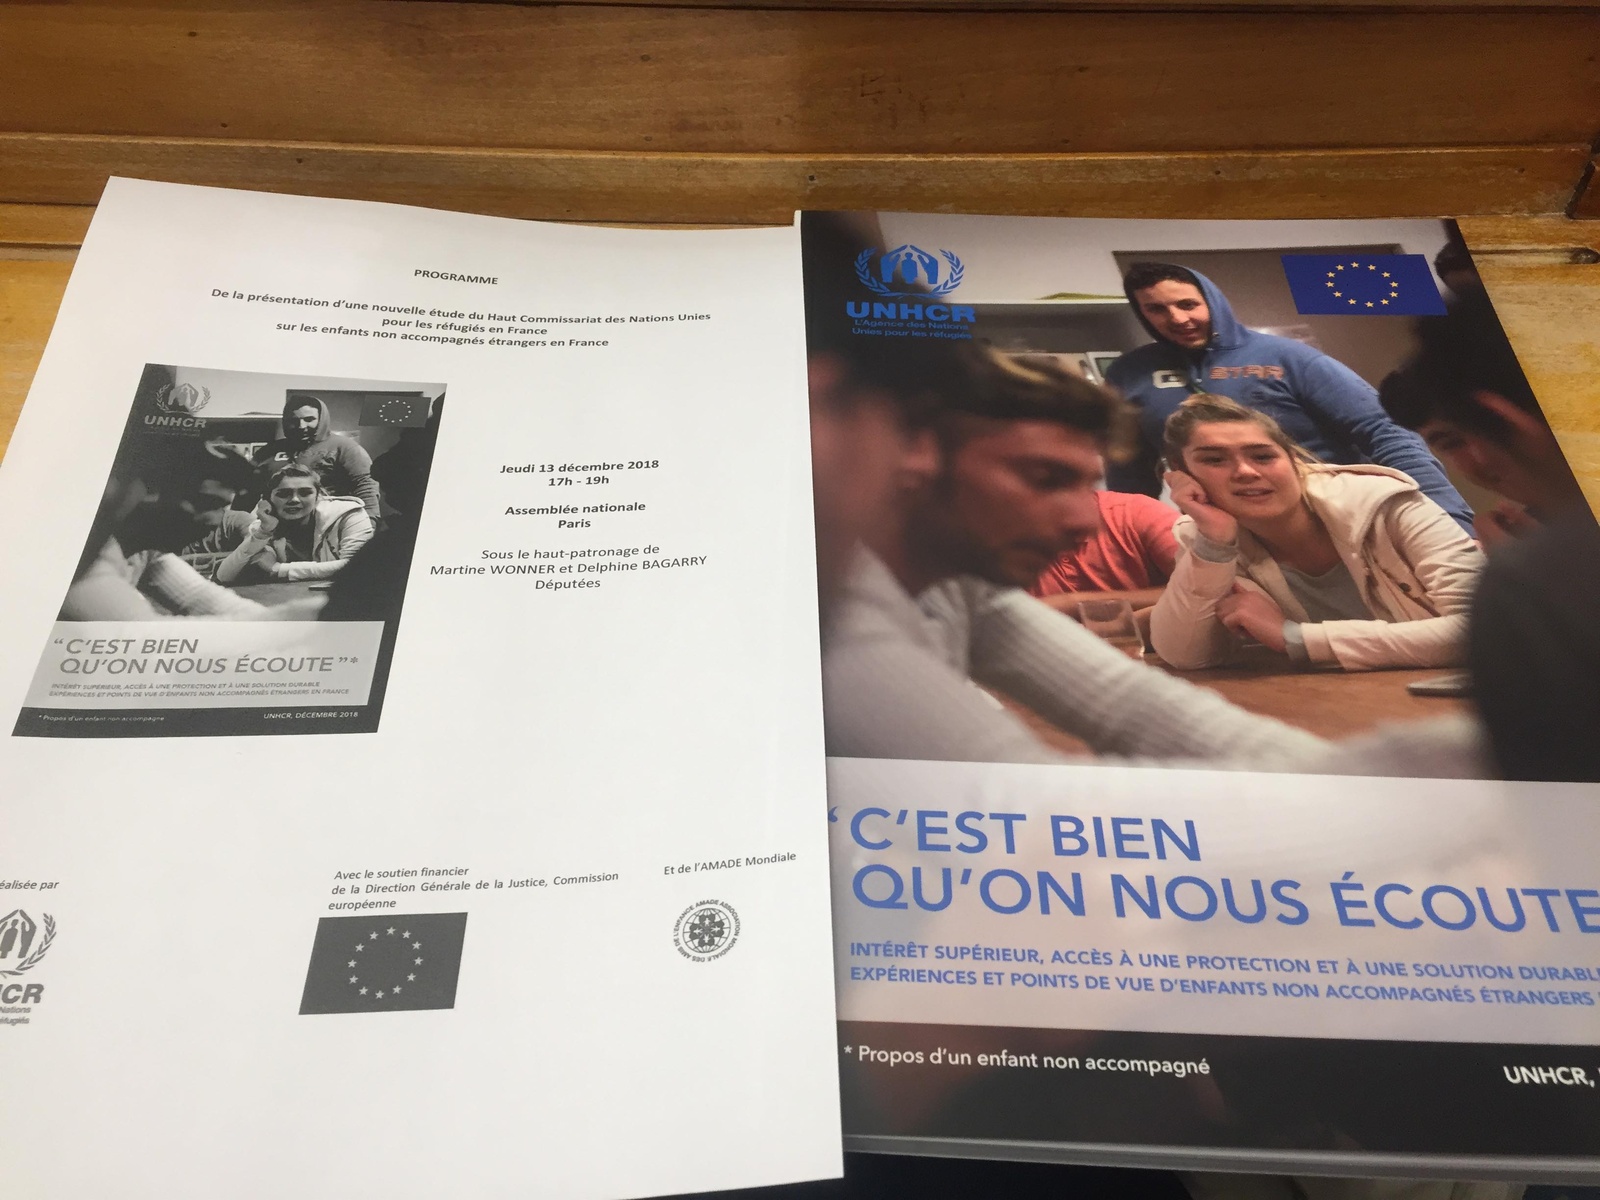 Le HCR en France lance une nouvelle étude « C'est bien qu'on nous écoute » sur la détermination de l'intérêt supérieur des enfants non accompagnés en France.